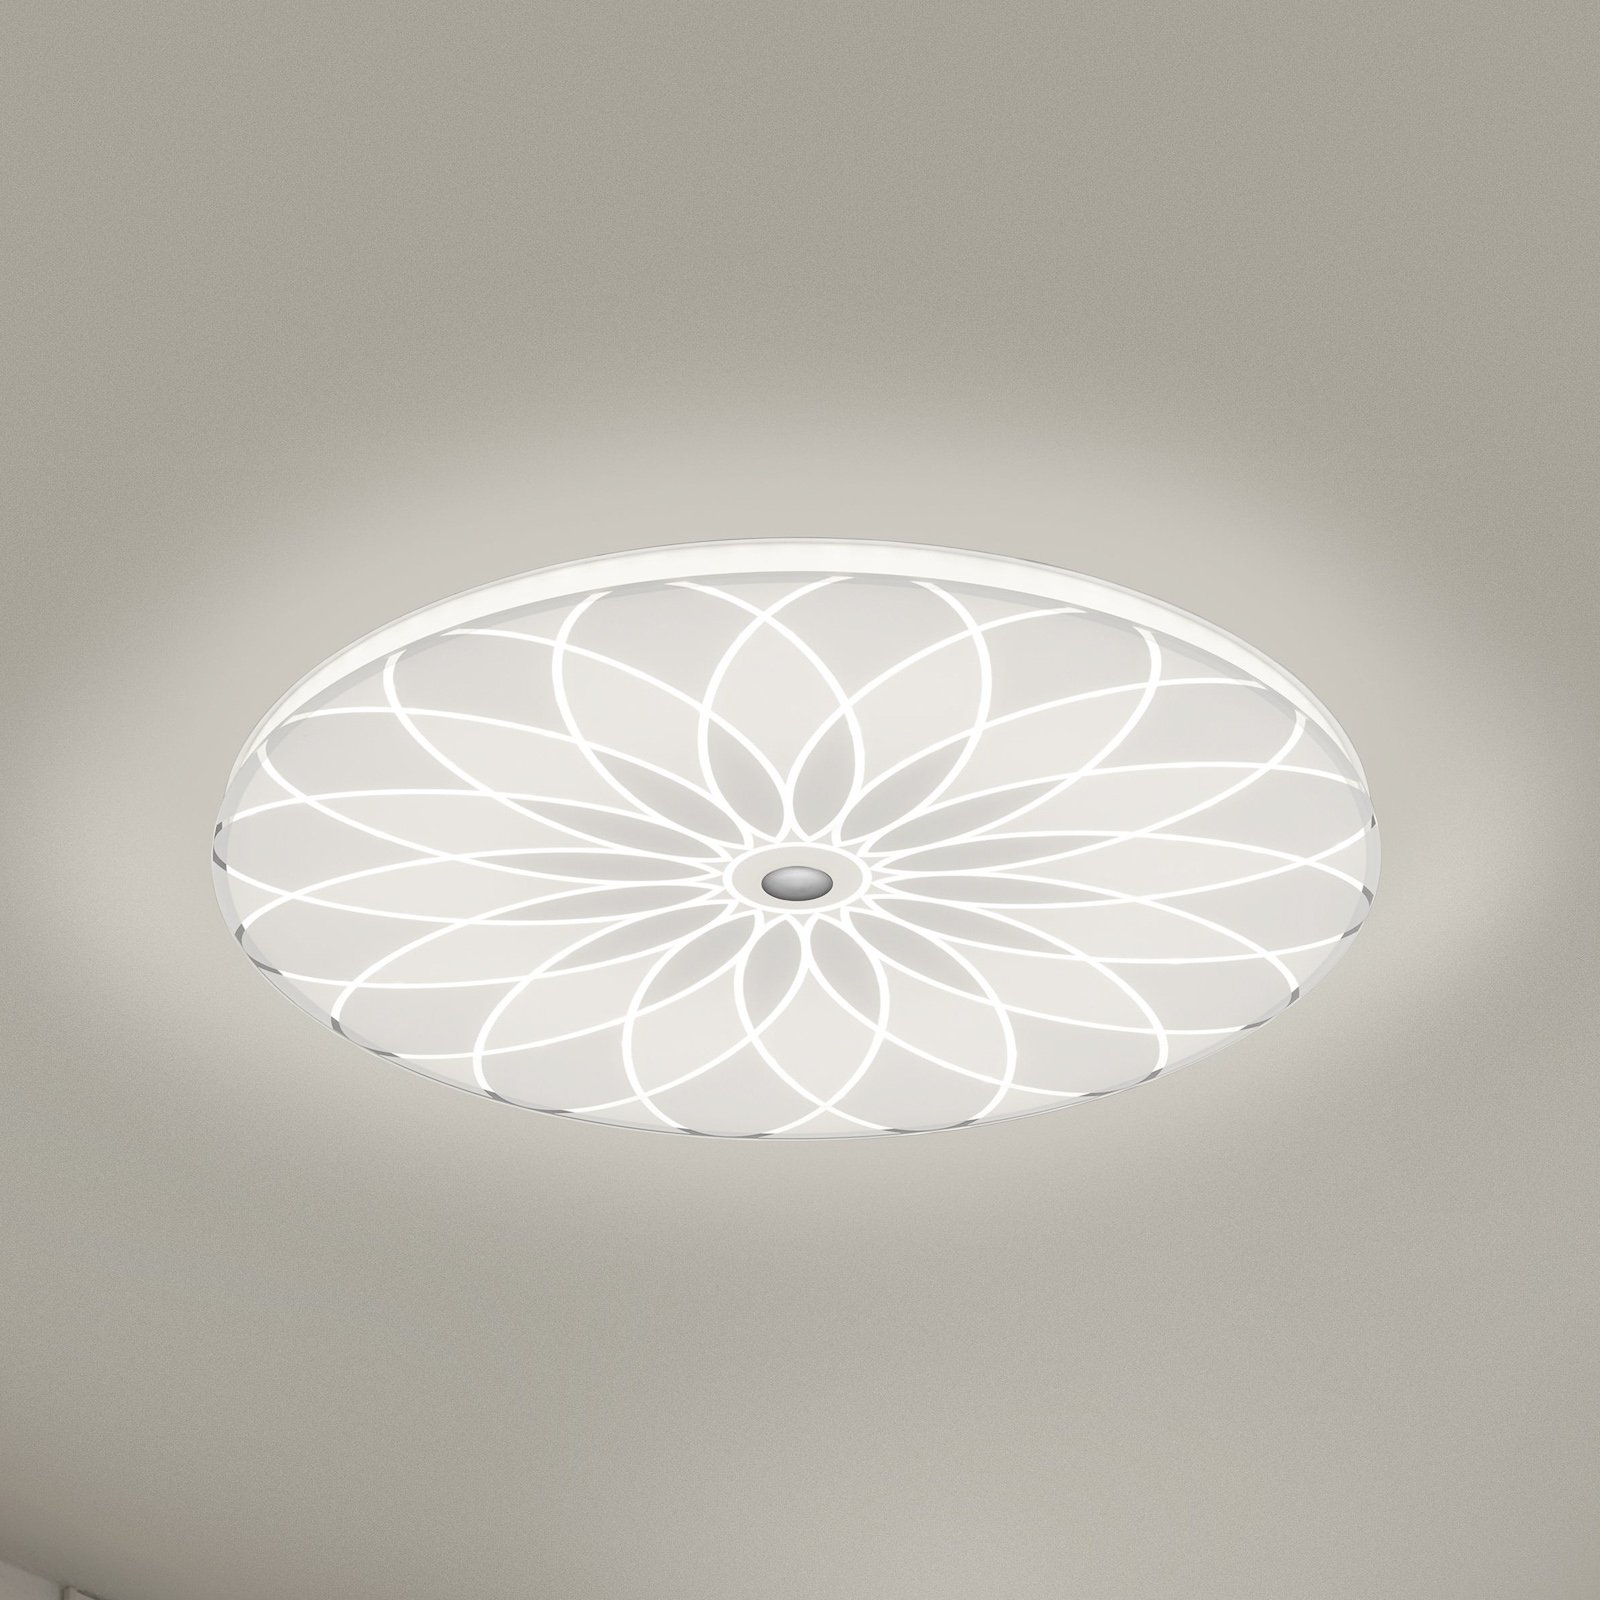 BANKAMP Mandala LED ceiling light, flower, Ø 42 cm